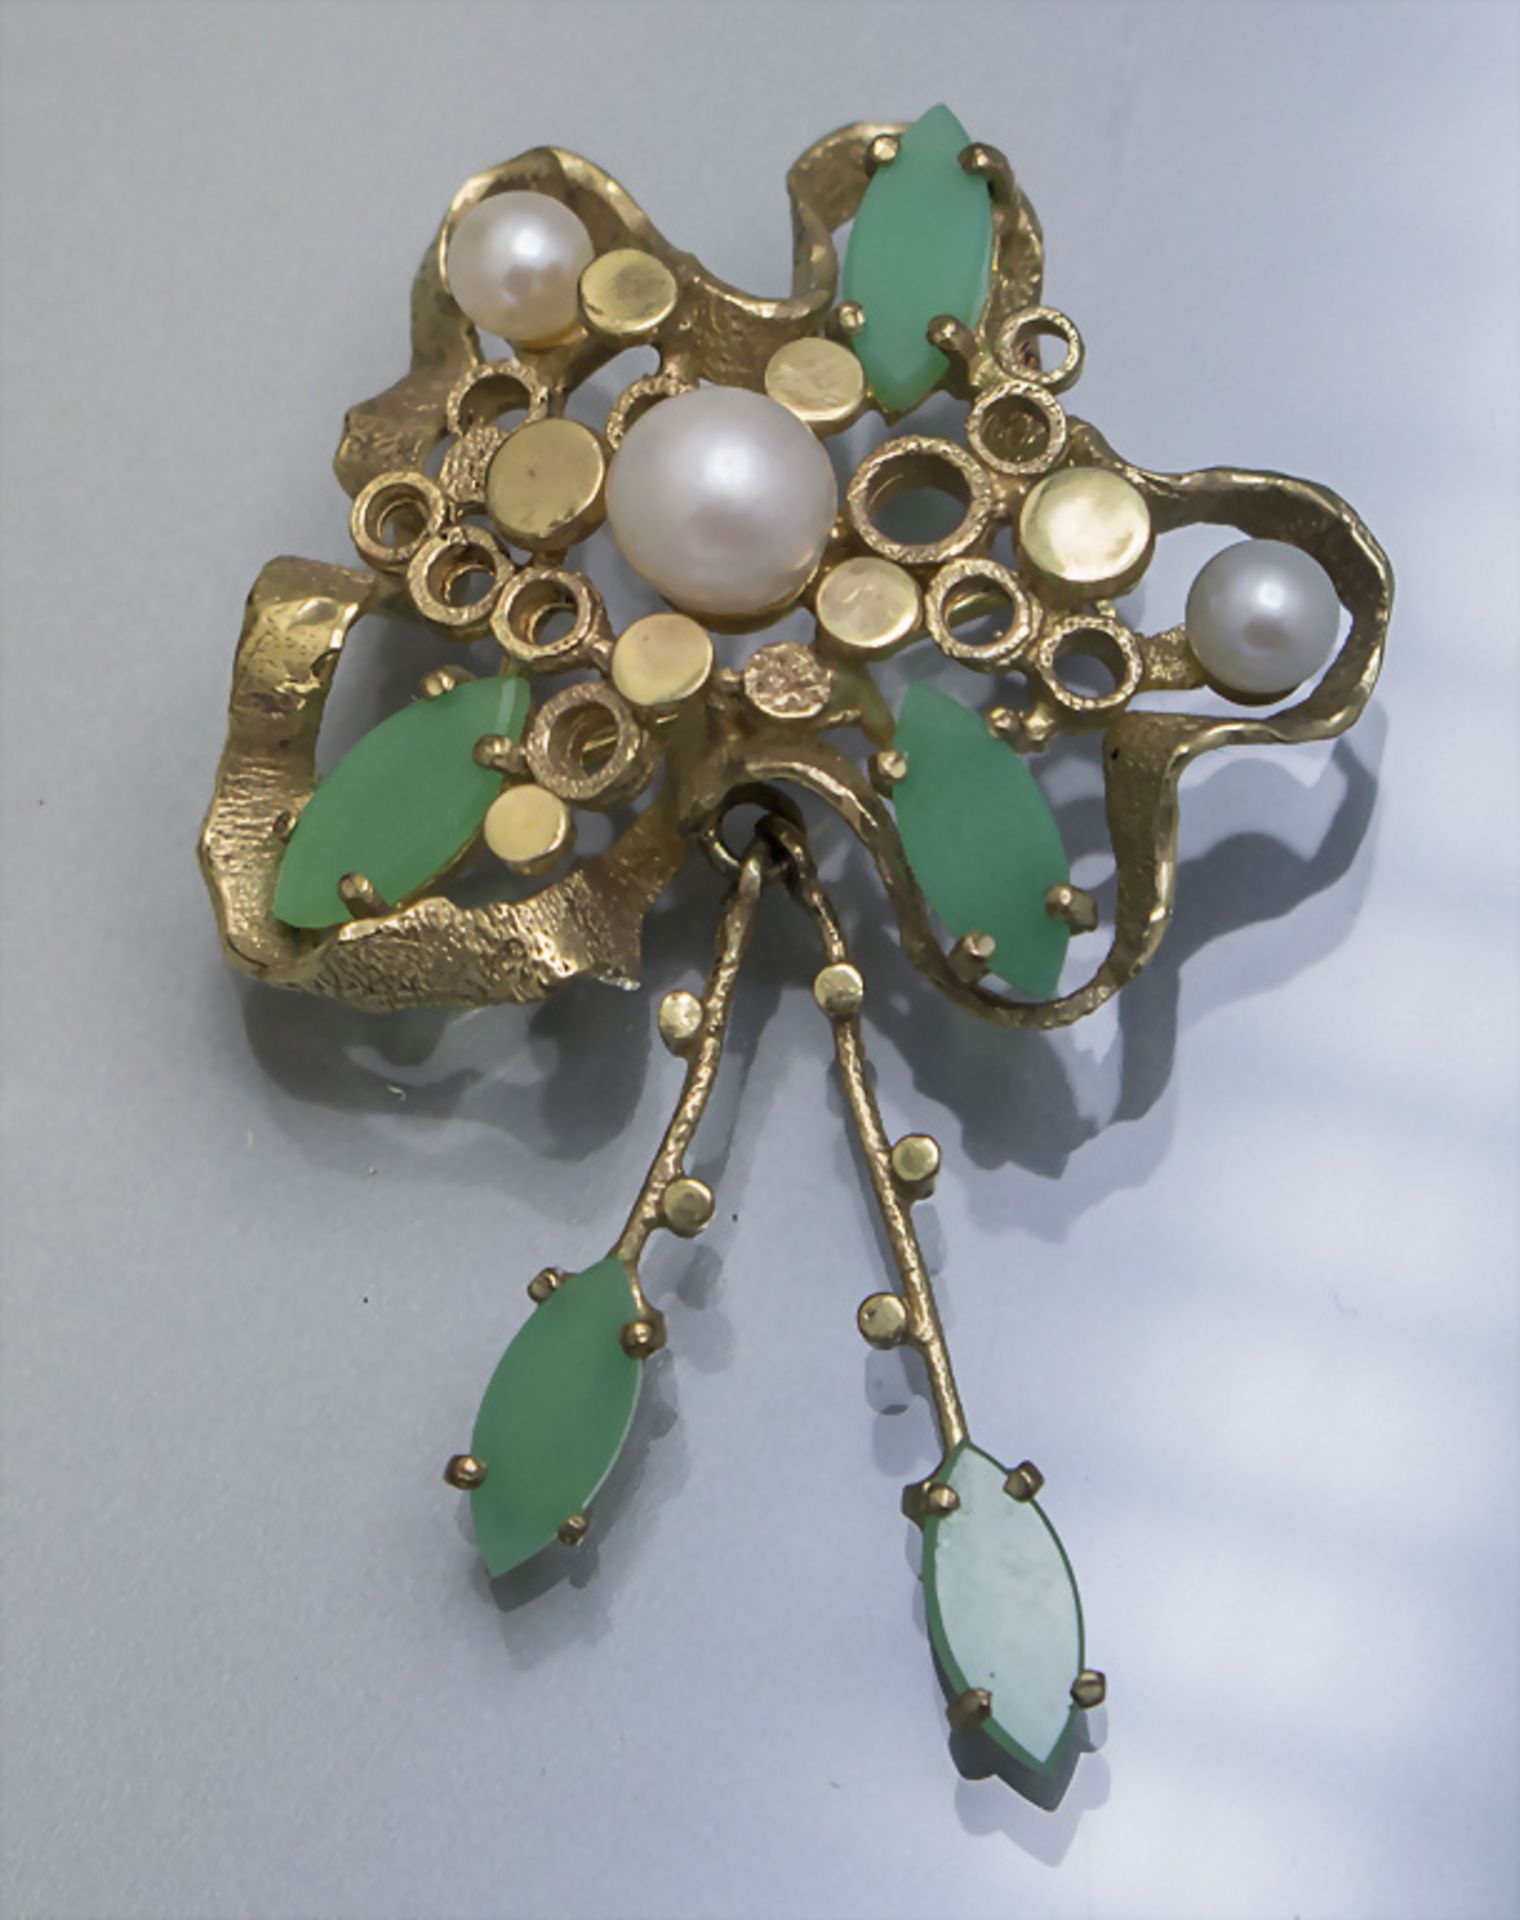 Gelbgold Brosche mit Perlen und Chrysopras / An 8 ct gold brooch with pearls and chrysoprase, ...